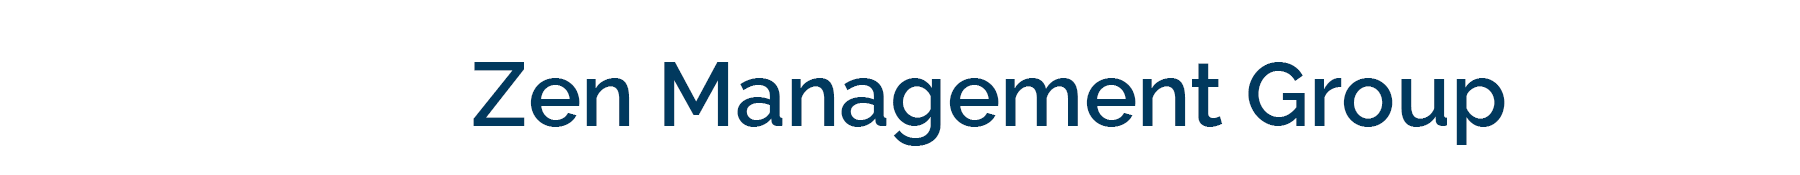 Zen Management Group Logo